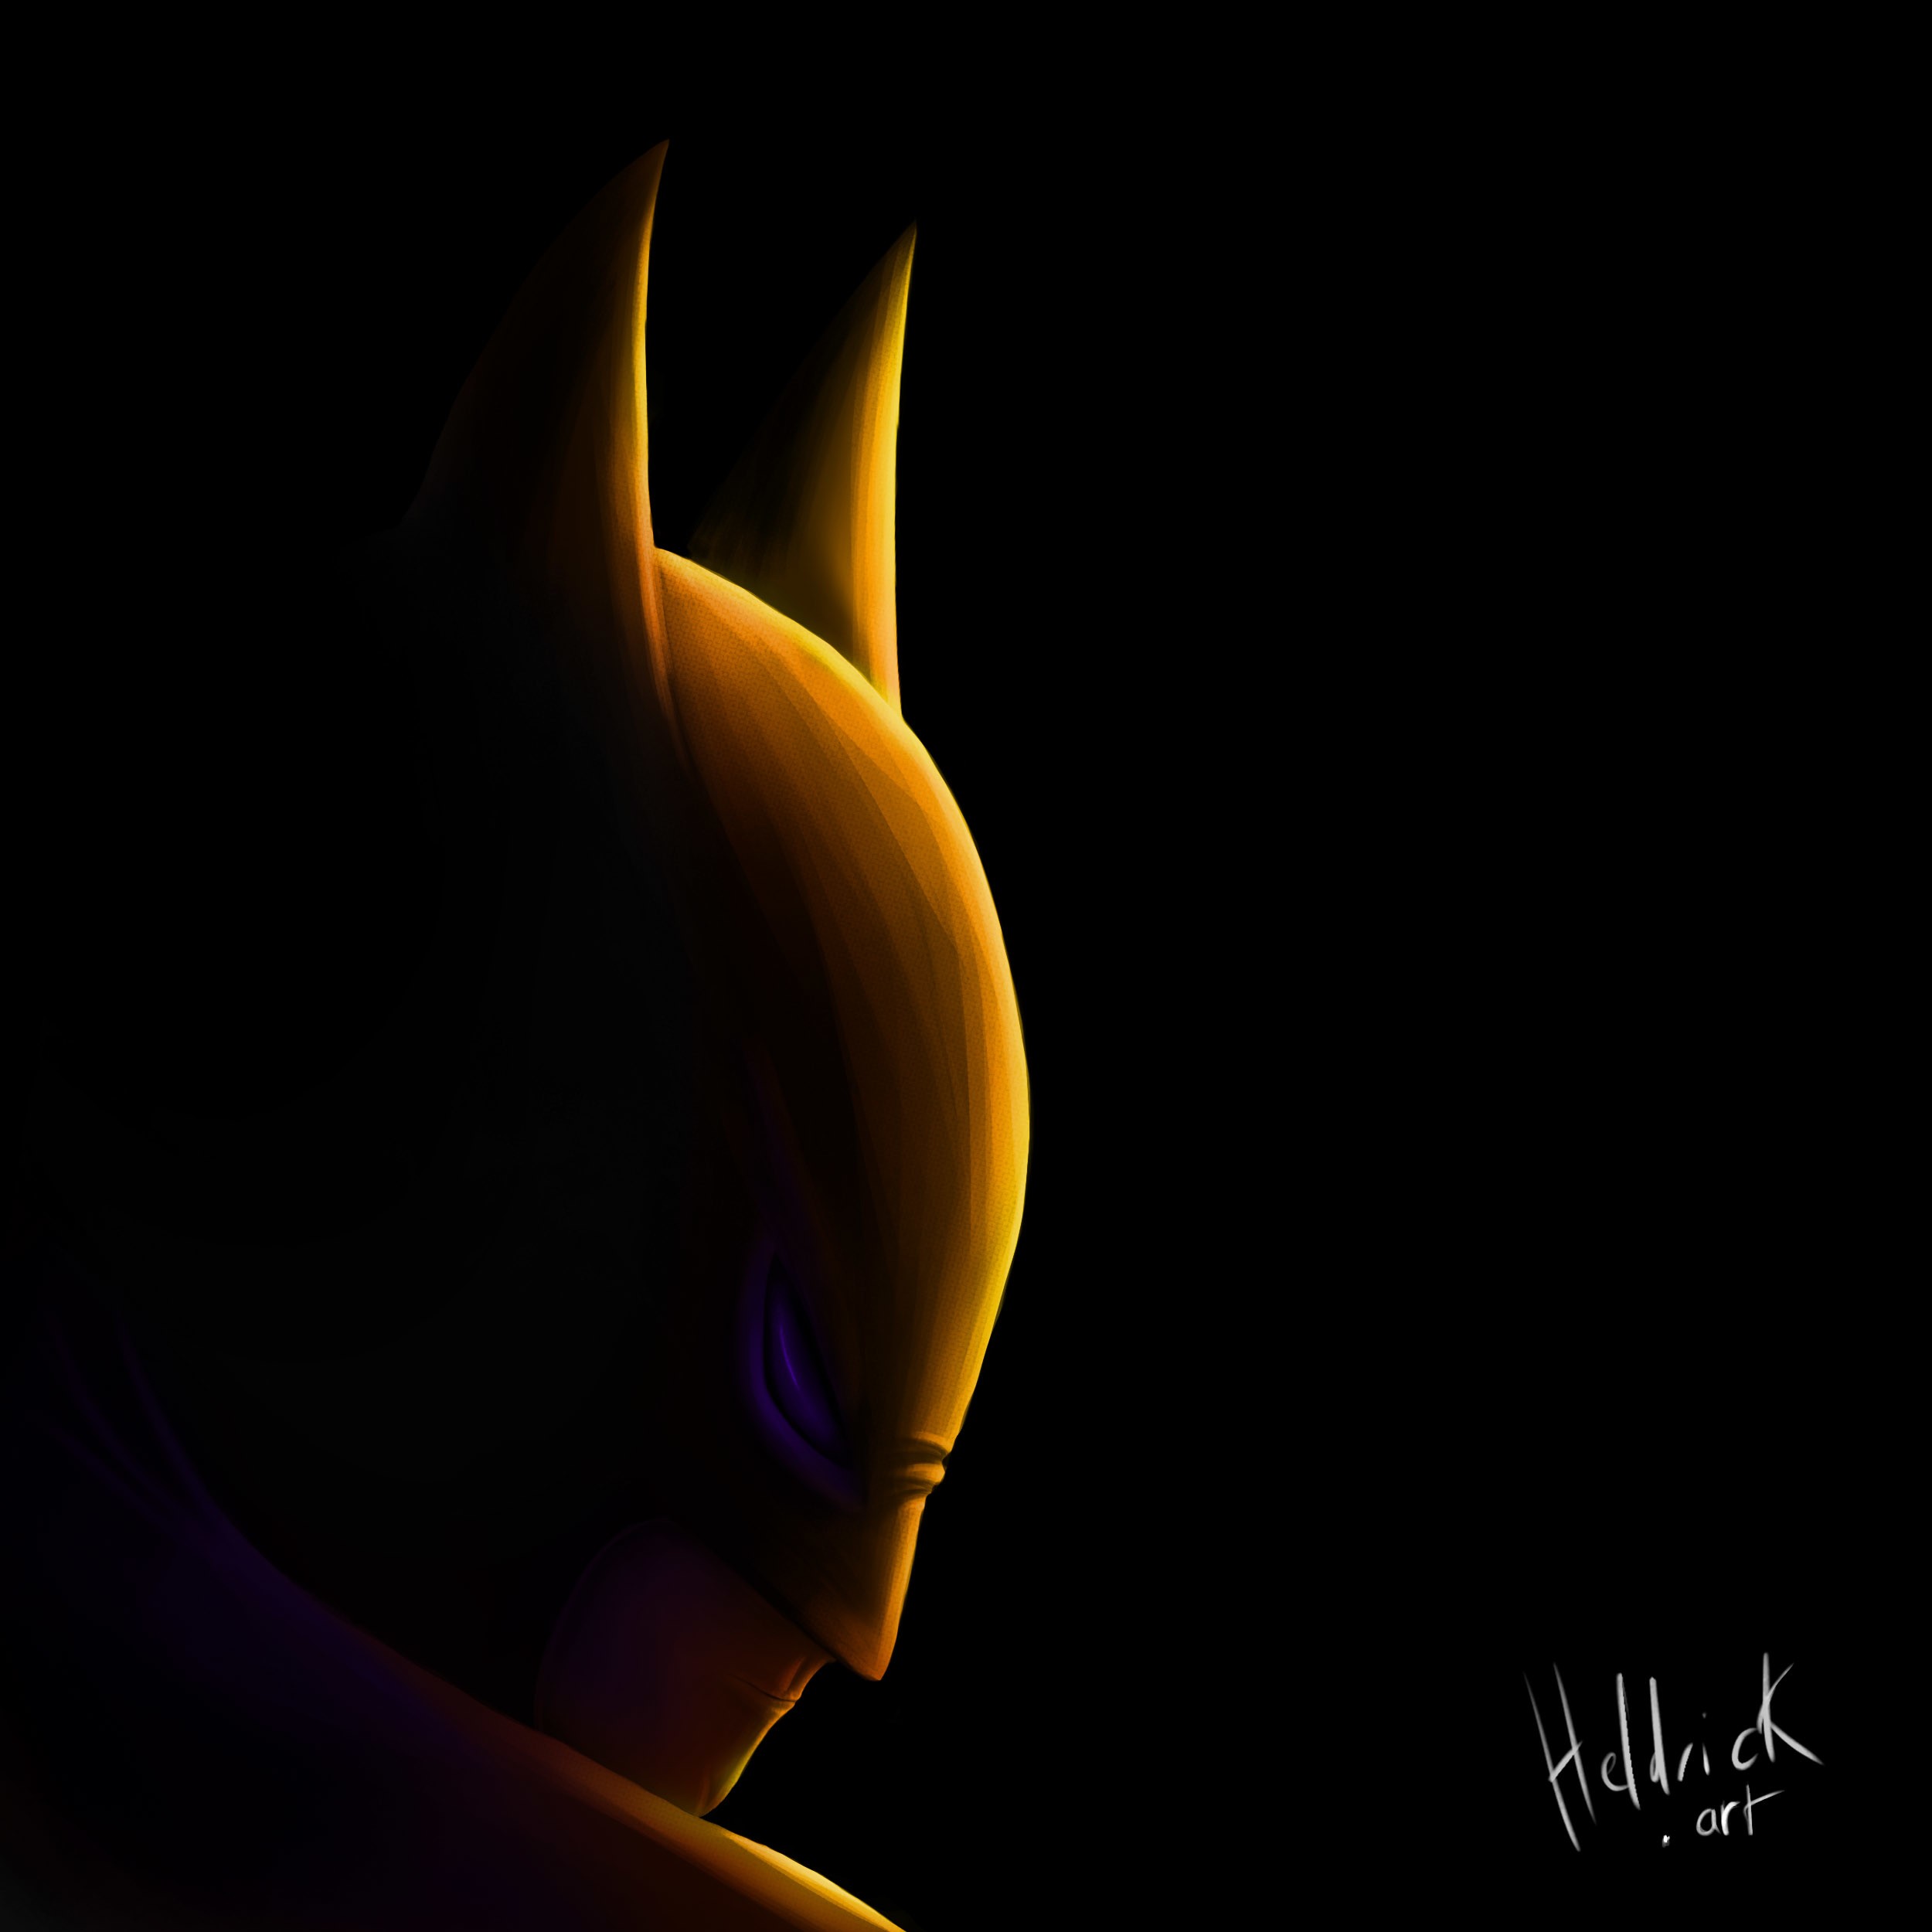 Portraits Pop Culture #7 Batman par Heldrick